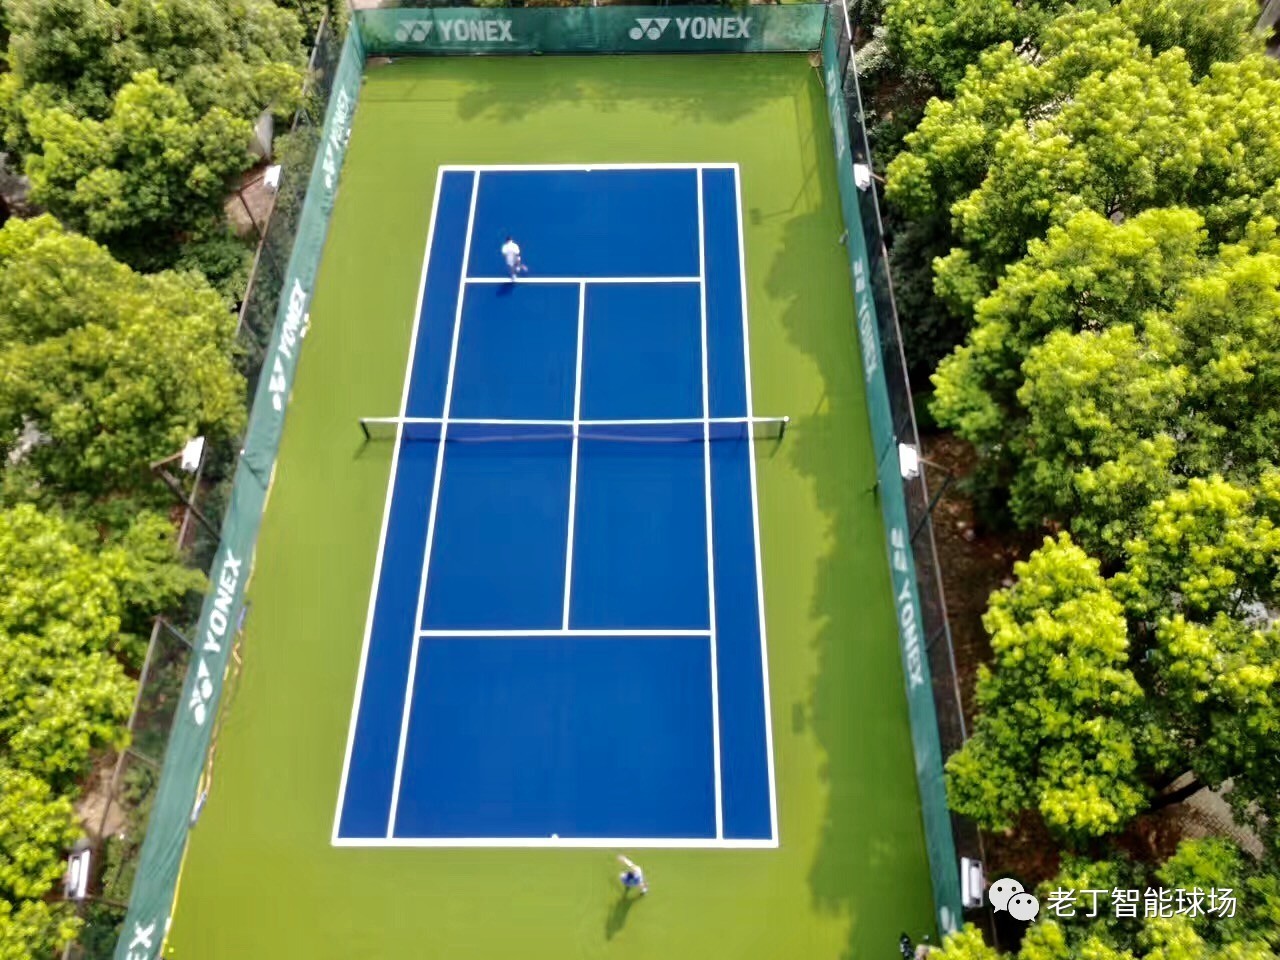 澳网,温网,美网)正因各自比赛场地不同而吸引着全球顶尖网球运动员